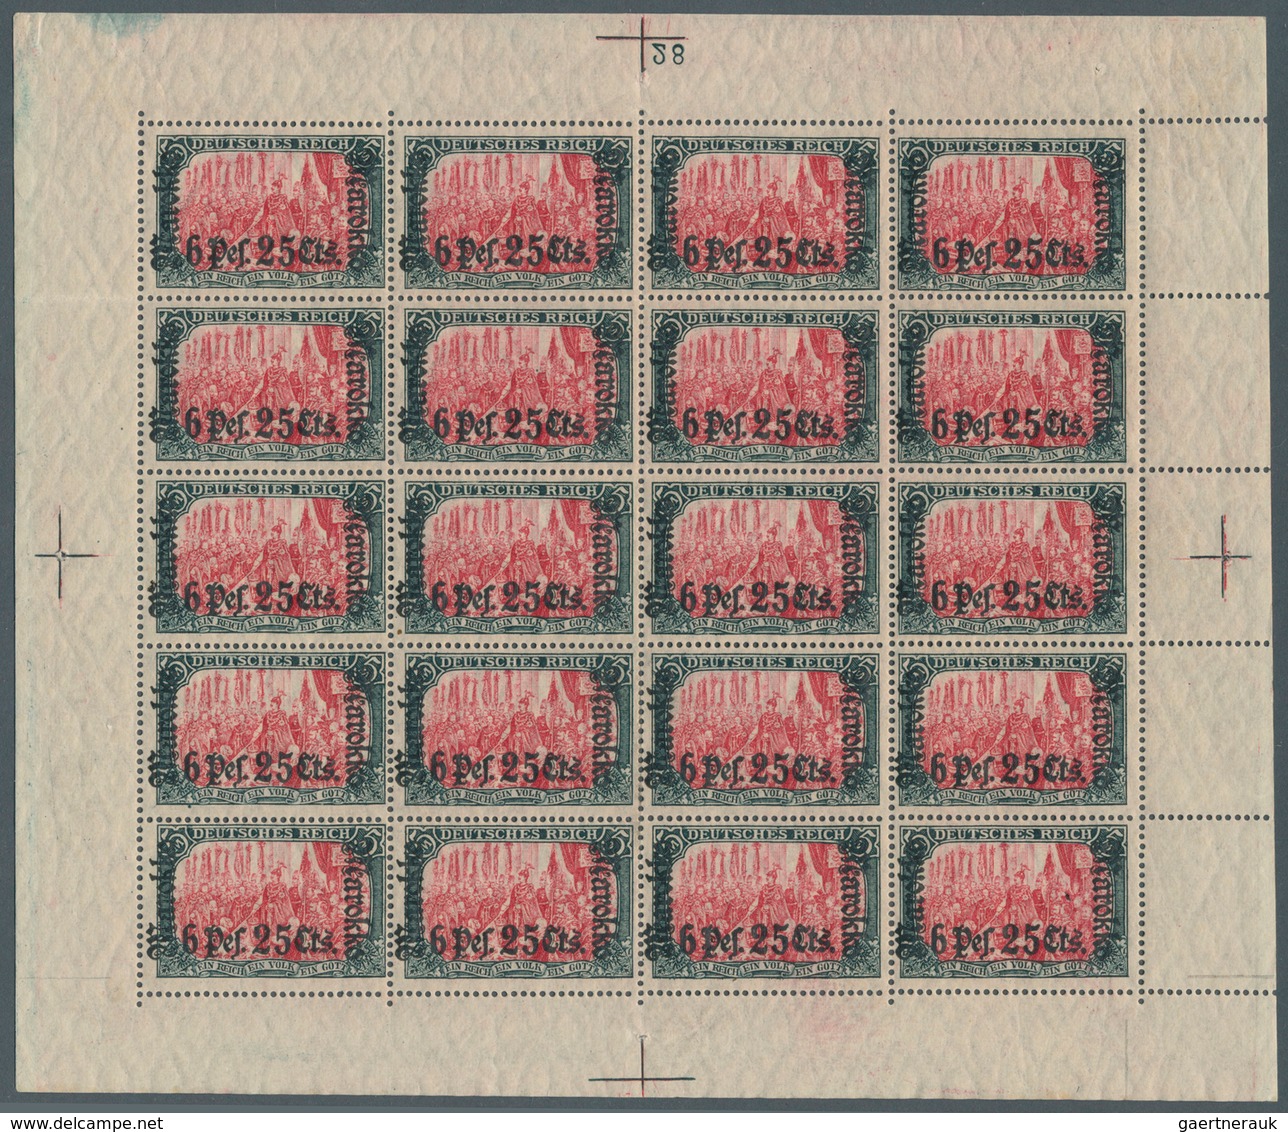 Deutsche Post In Marokko: 1911, "6Pes25Cents" Auf 5 Mark "Marokko", Kriegsdruck, Kompletter Postfris - Marocco (uffici)